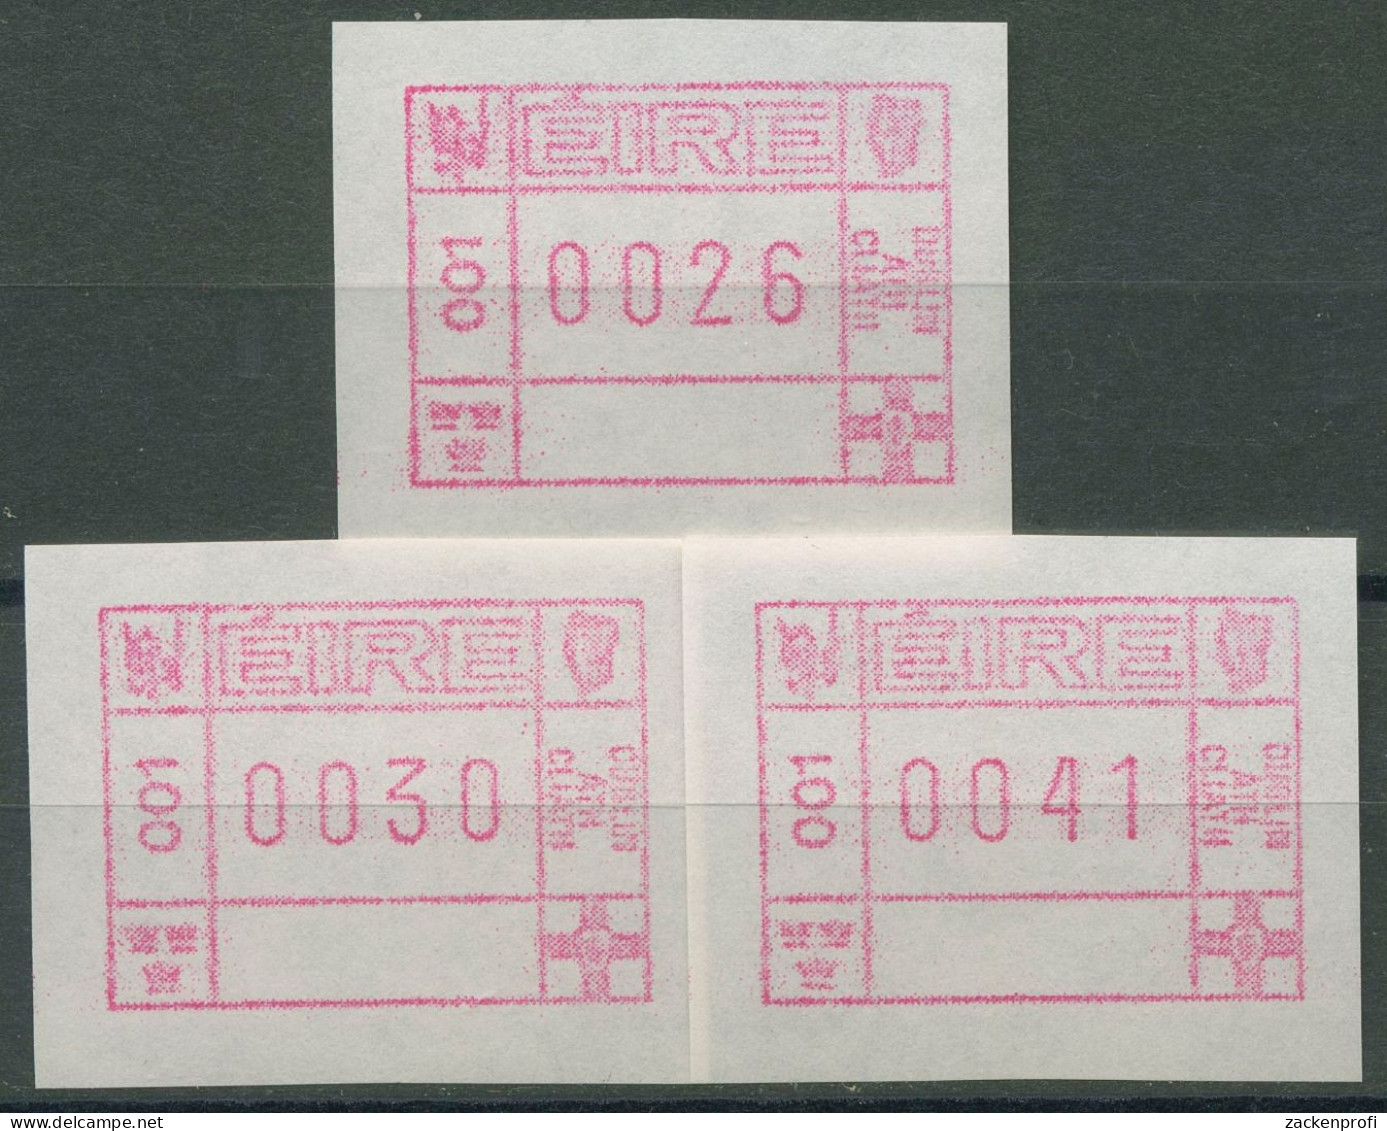 Irland Automatenmarken 1990 Freimarke Versandstellensatz ATM 1 S1 Postfrisch - Frankeervignetten (Frama)